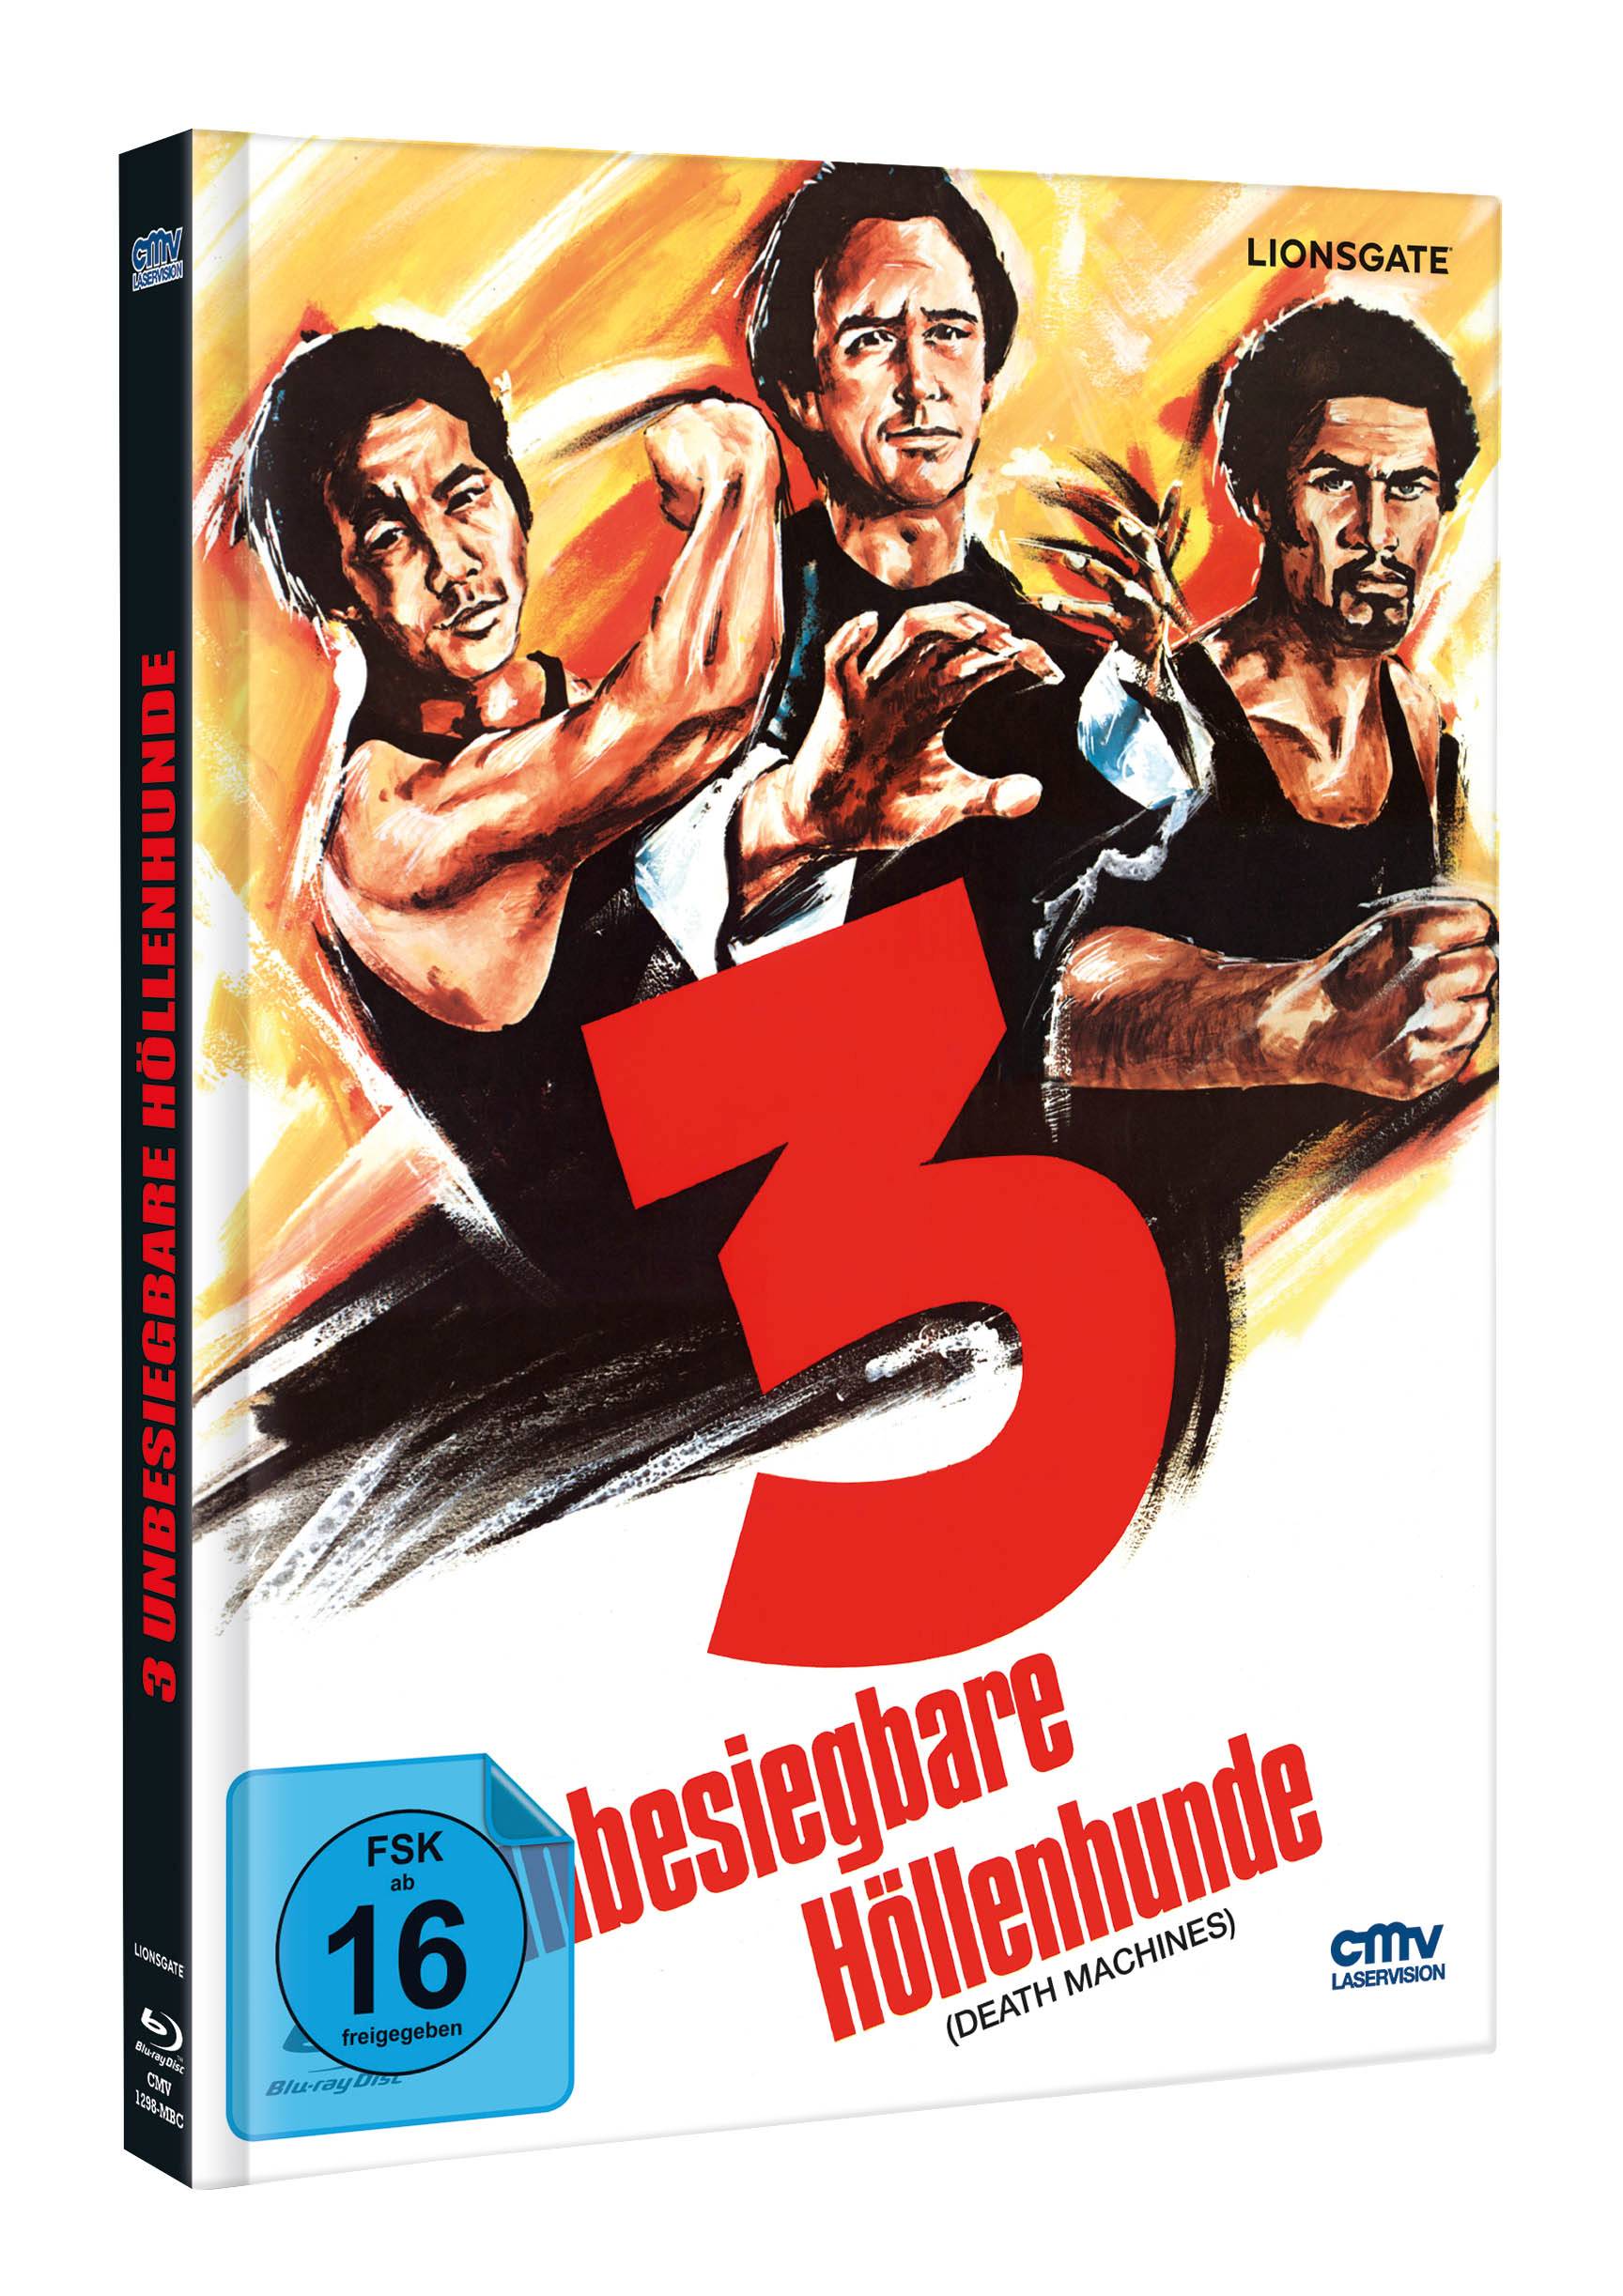 3 unbesiegbare Höllenhunde (Death Machines) (DVD + Blu-ray) (Limitiertes Mediabook) (Cover C)